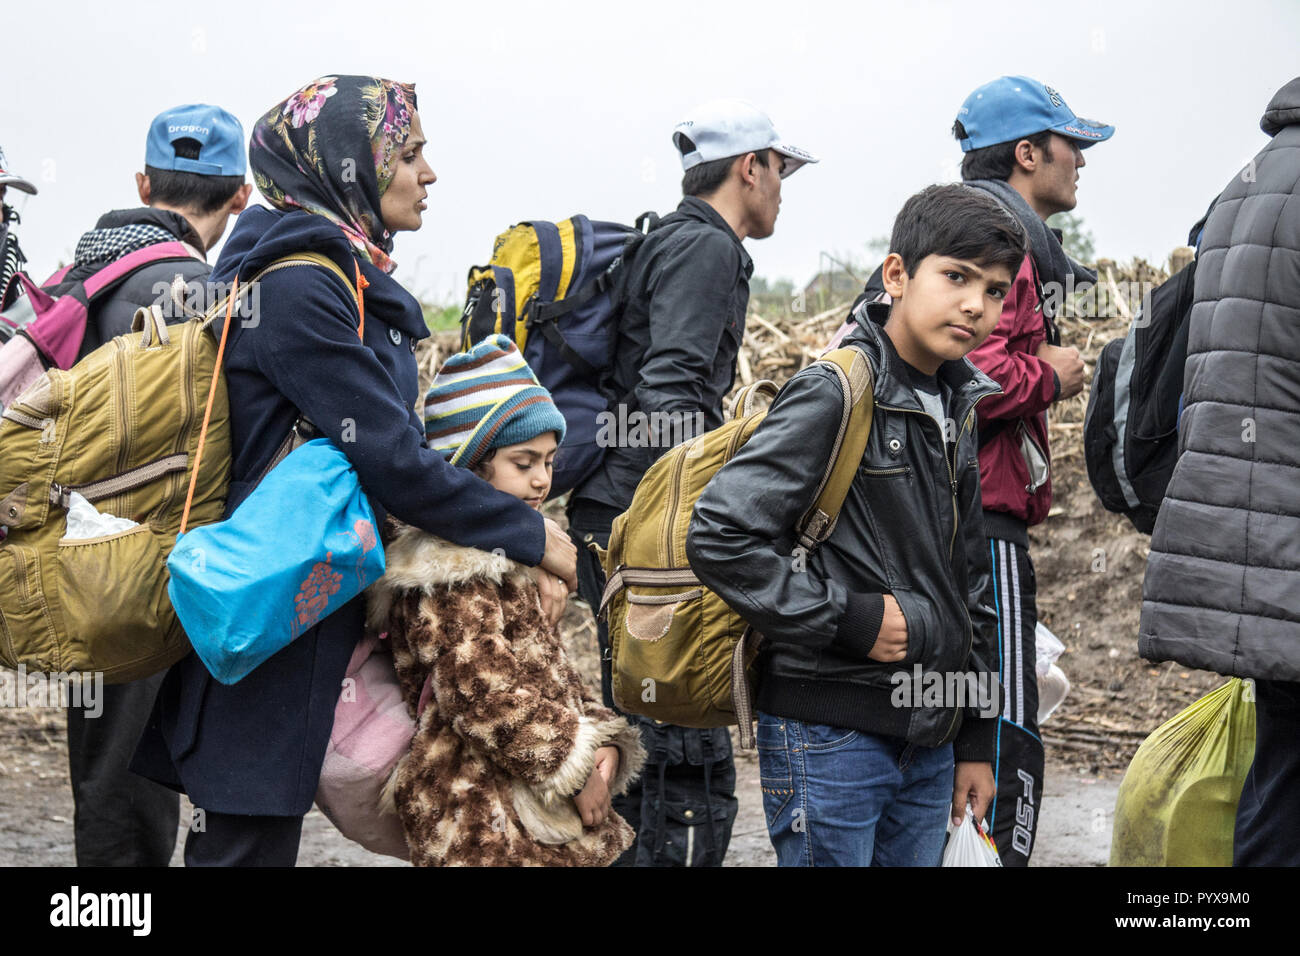 BERKASOVO, SERBIE - 17 octobre 2015 : Groupe de réfugiés, principalement des enfants, en attendant de traverser la frontière de la Croatie Serbie, entre les villes de Bapska et Banque D'Images